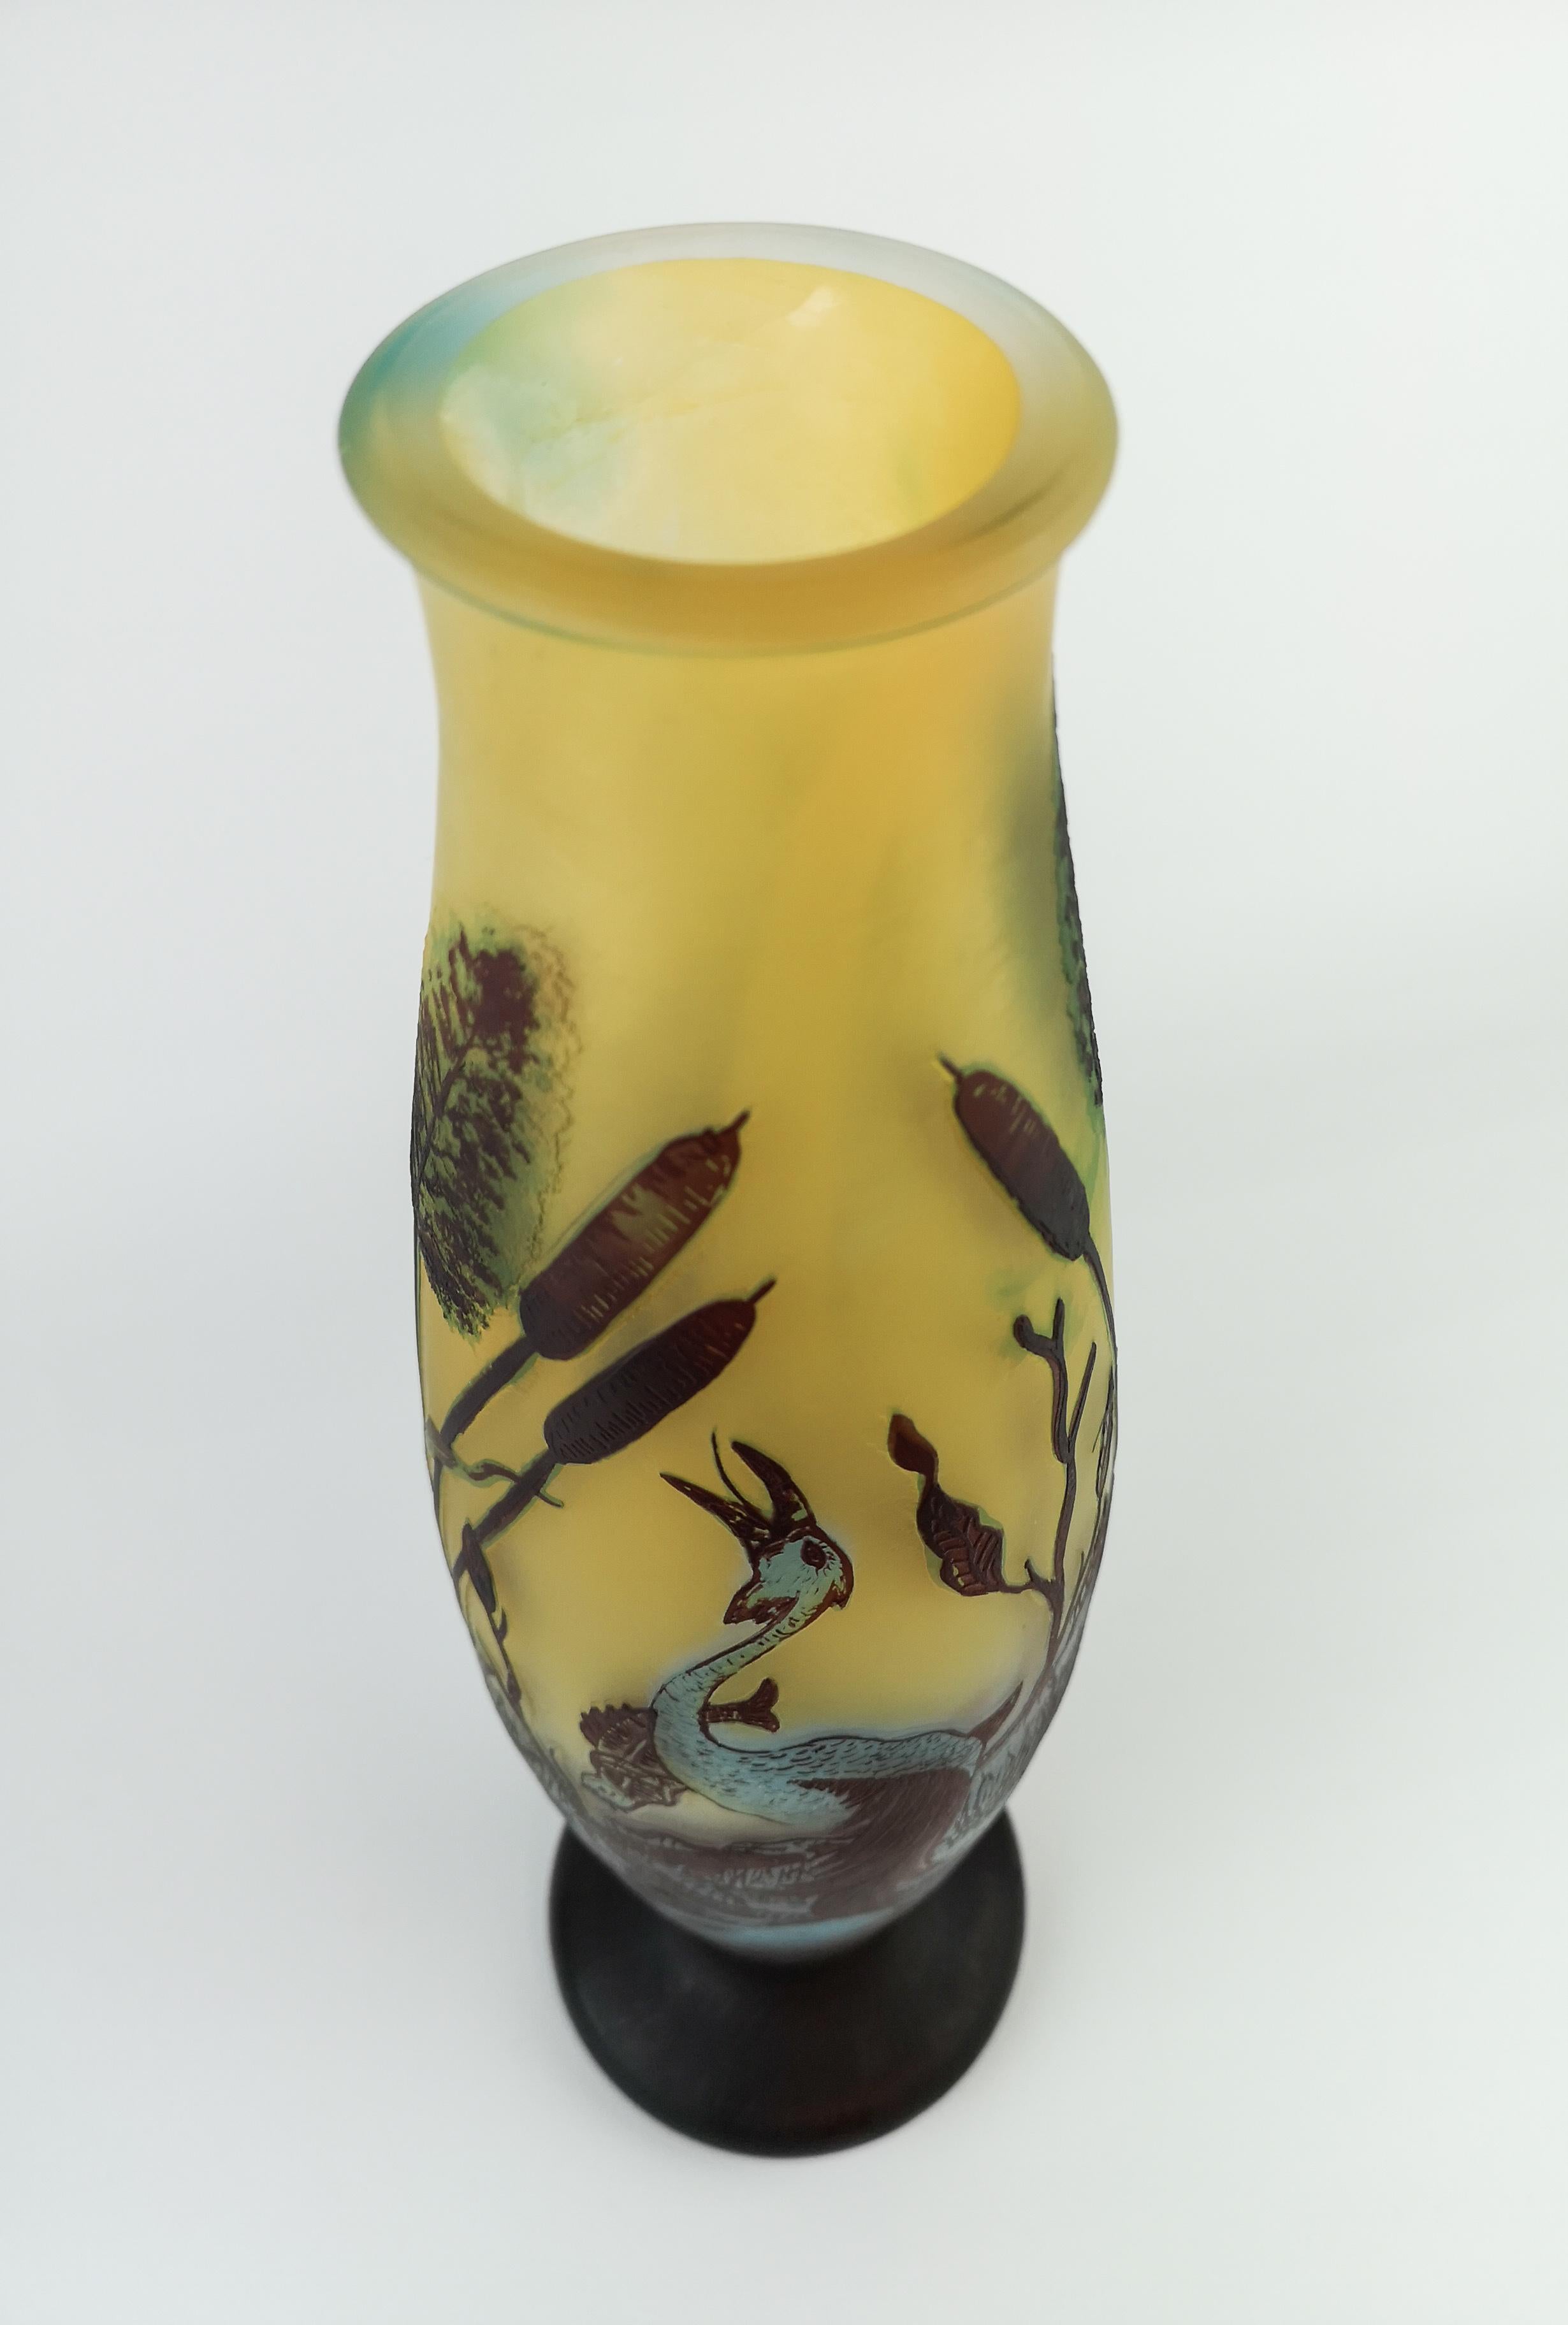 Art Glass Art Nouveau Decorative Unique Carved Glass Vase Sweden 1900s